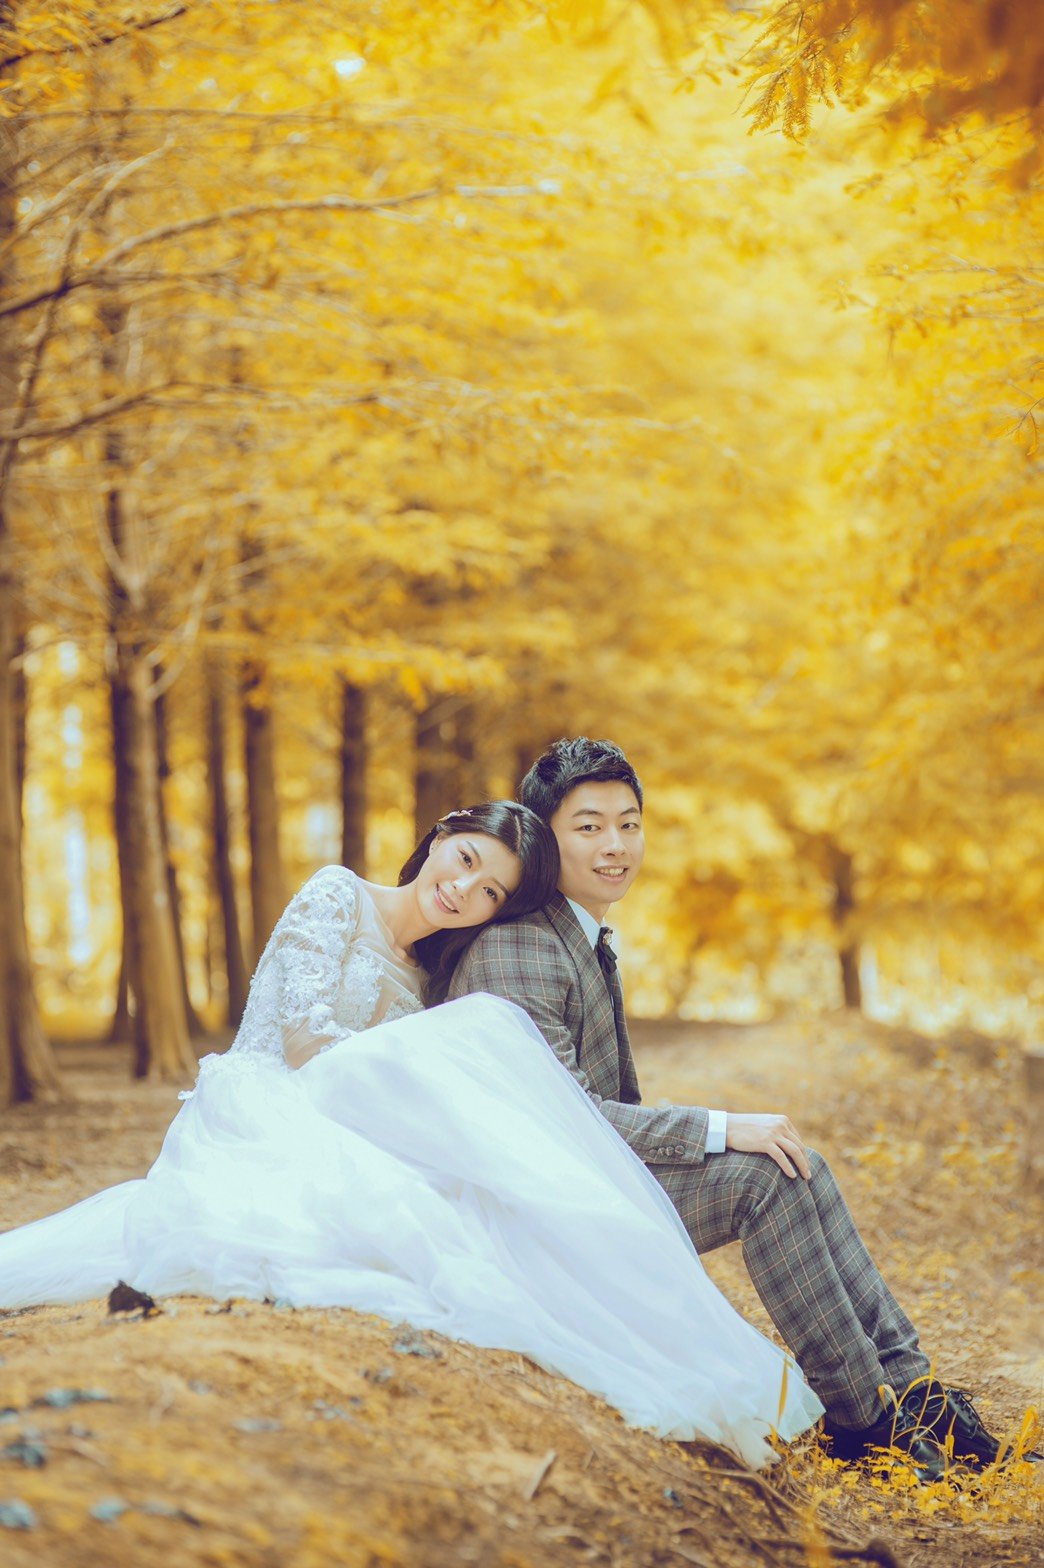 嘉義紐約紐約 - 婚紗攝影分享-婚禮廠商評價